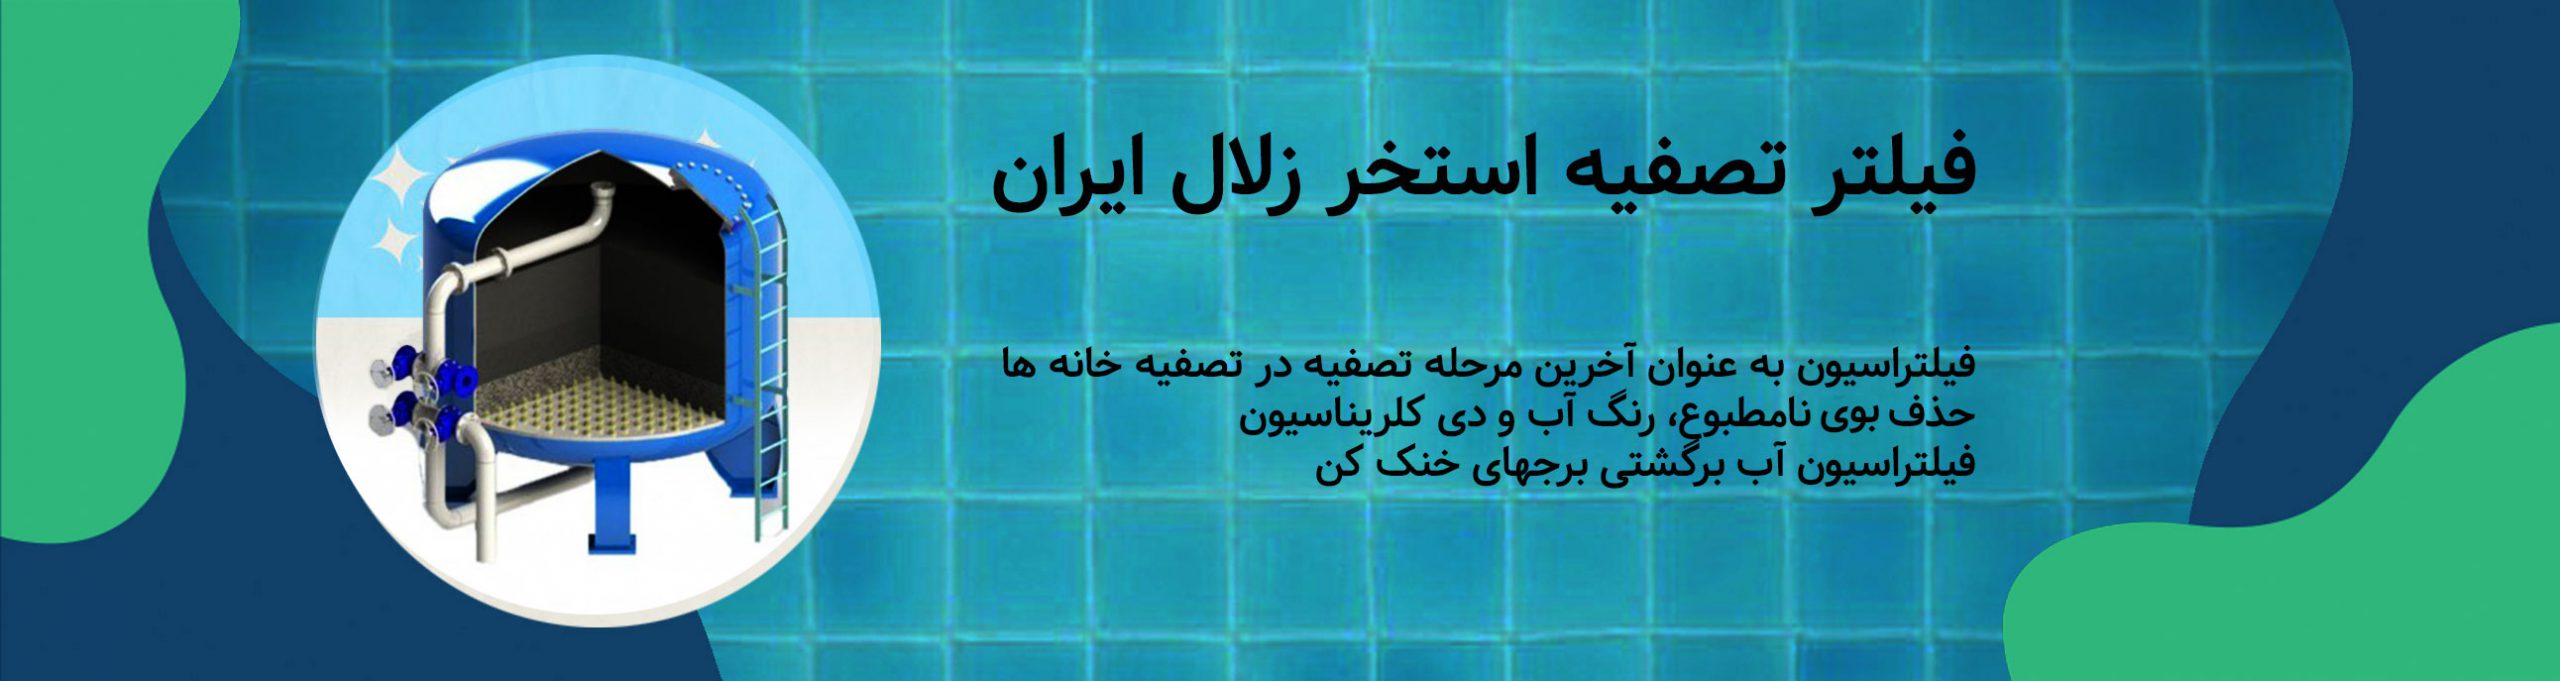 خرید فیلتر تصفیه استخر زلال ایران | Tasisat Bank